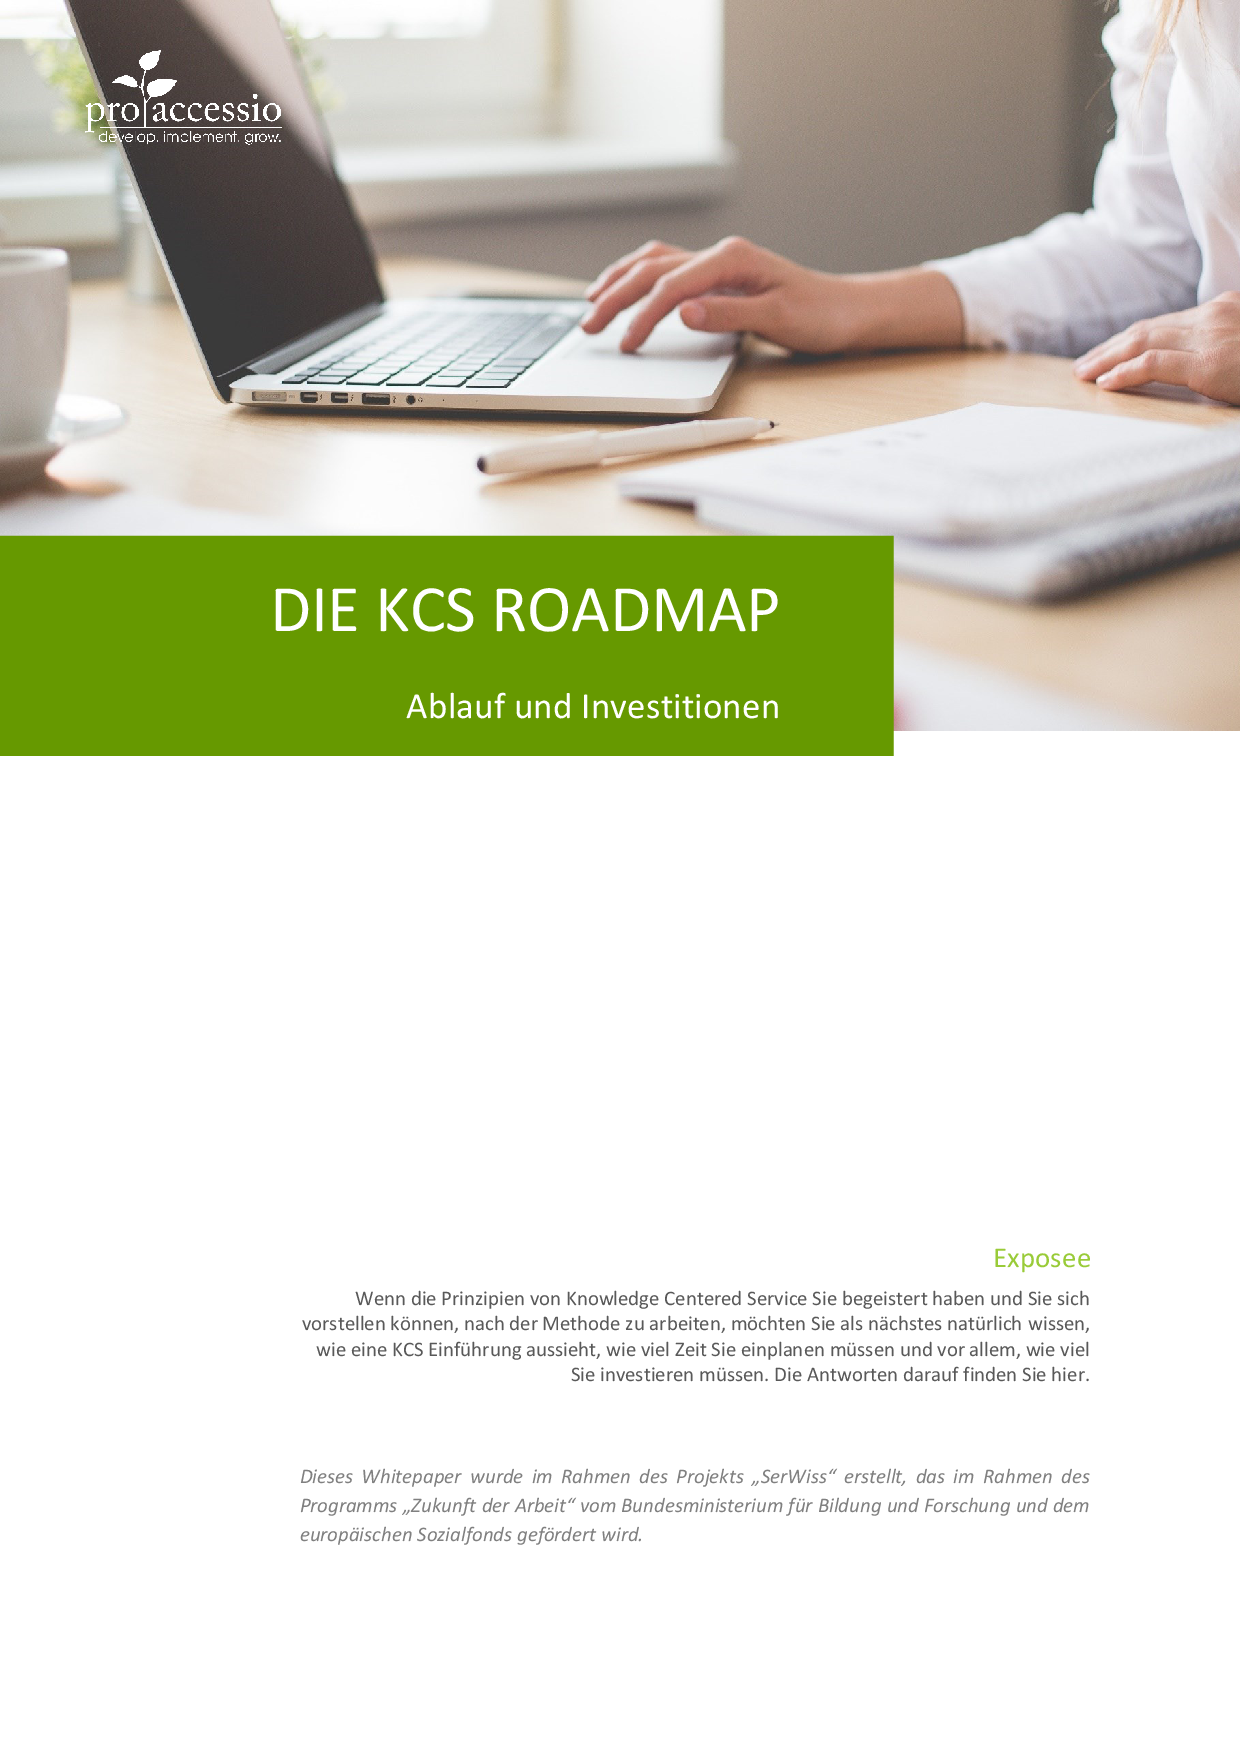 Die KCS® Roadmap - Ablauf und Investitionen